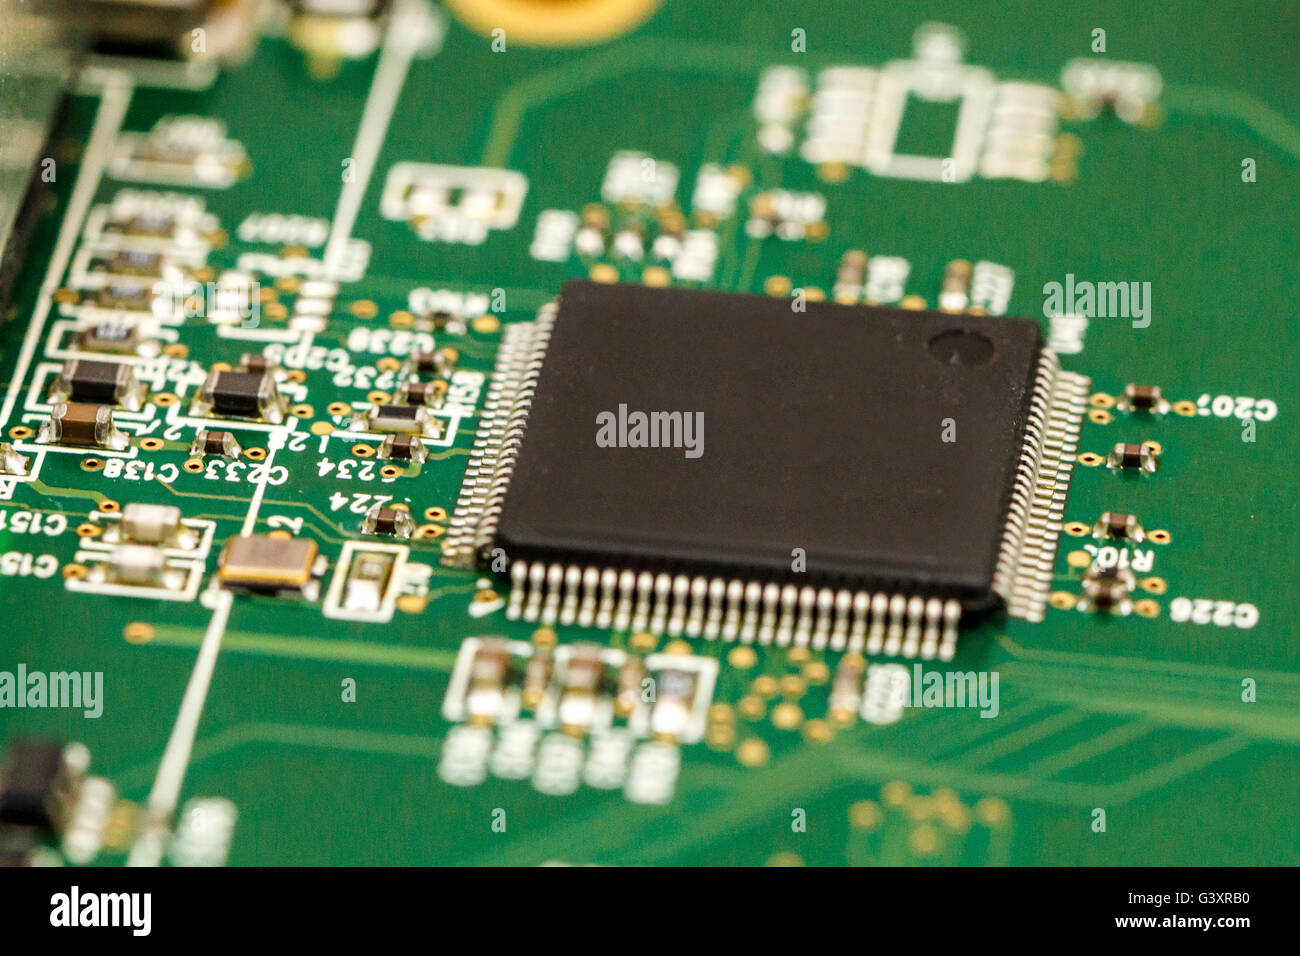 Placa de circuito impreso con ICs, chip condensadores y resistencias SMD. Foto de stock